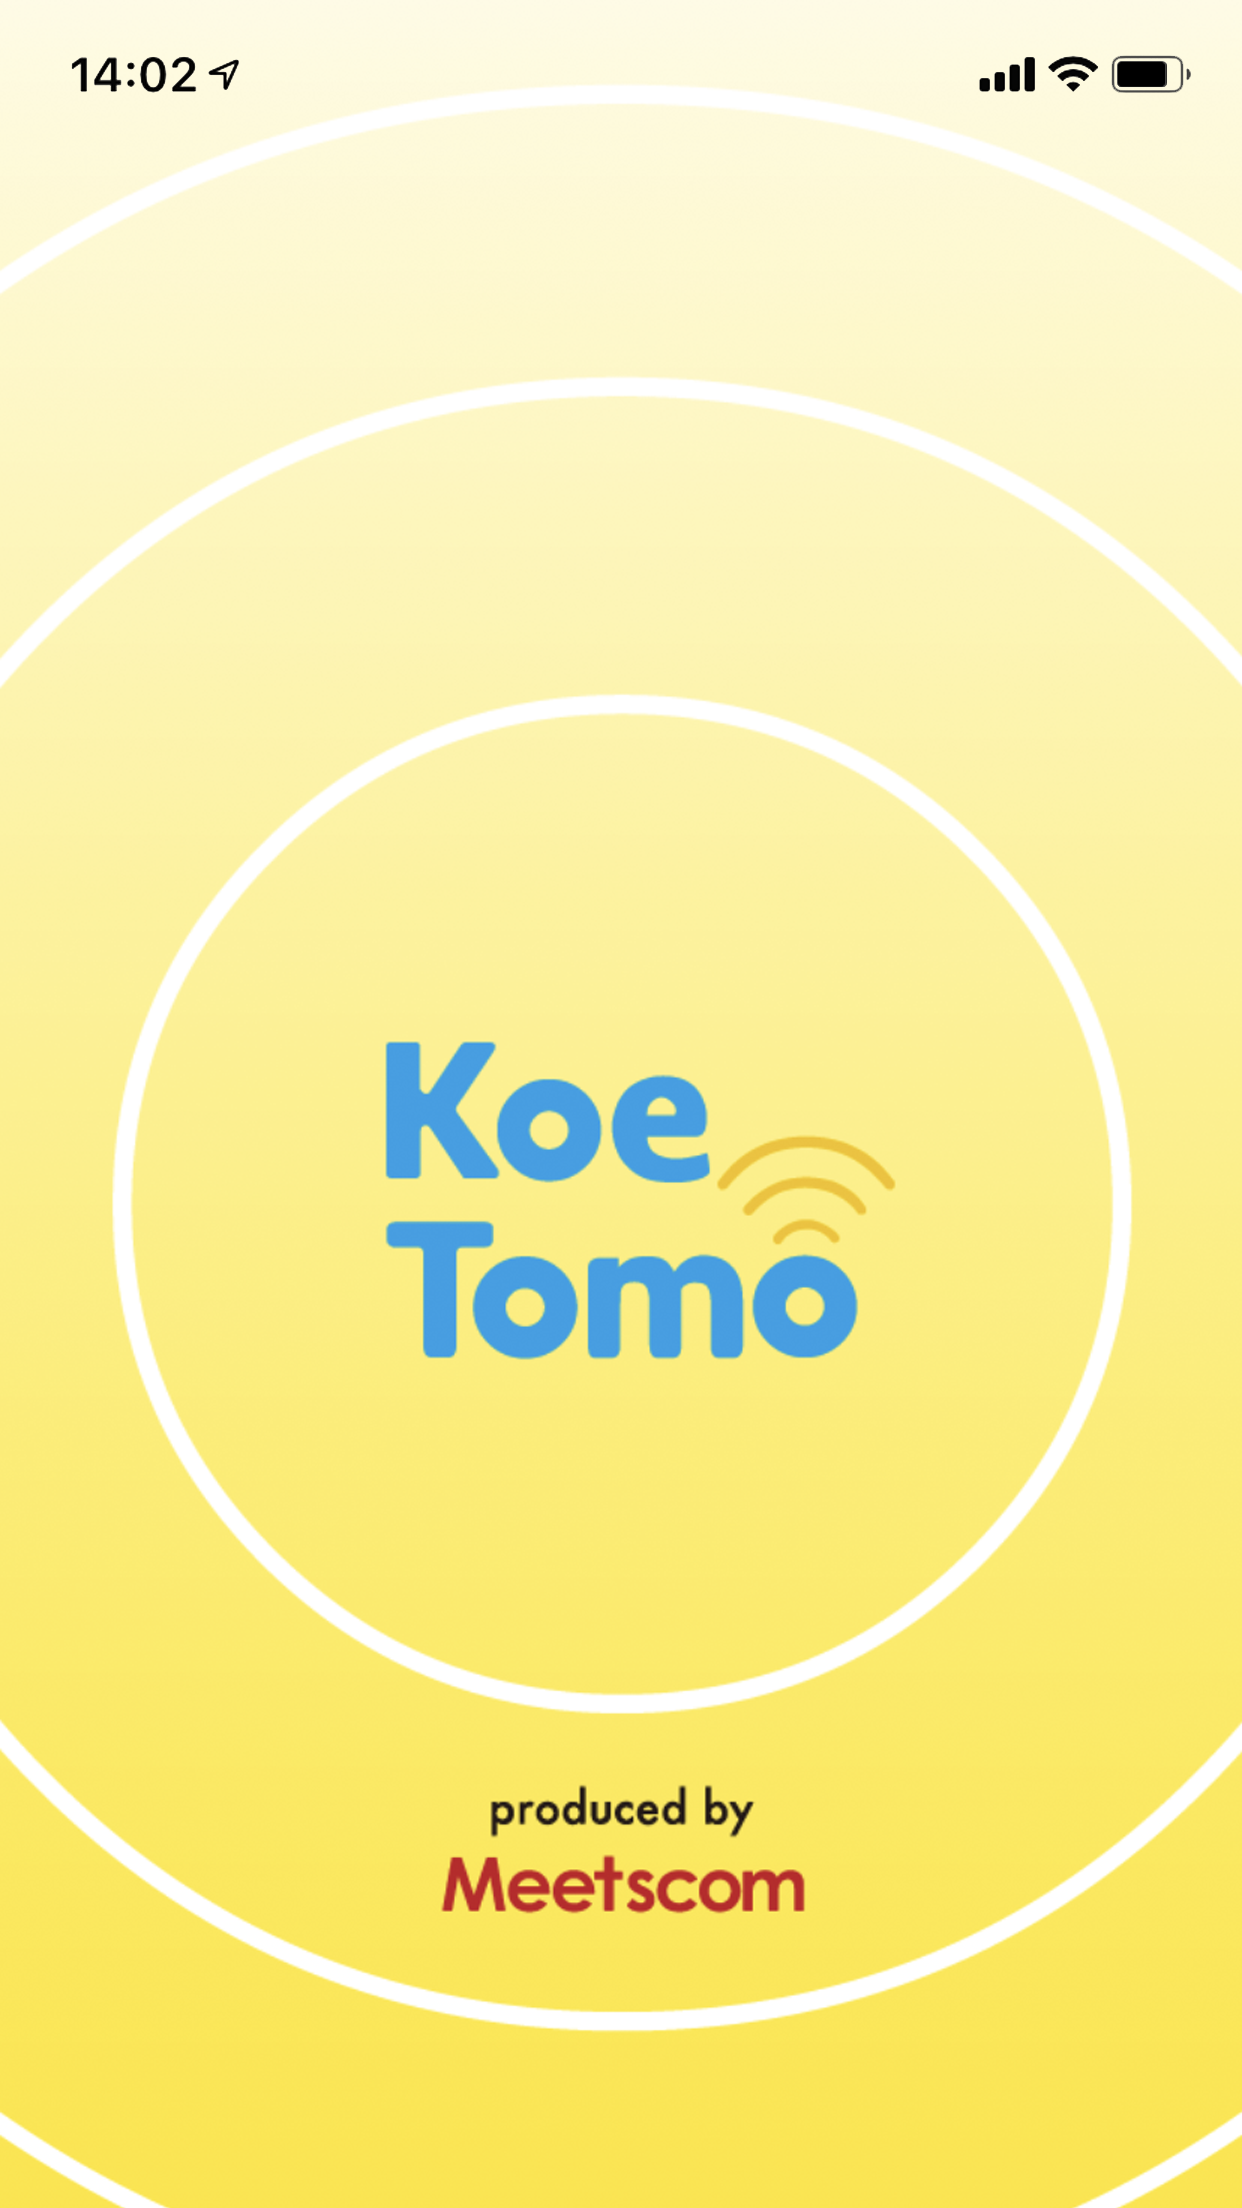 KoeTomoは、声でつながるという新しいカタチのソーシャルサービス。ユーザも300万を超え、今後の更なる成長が楽しみだ。